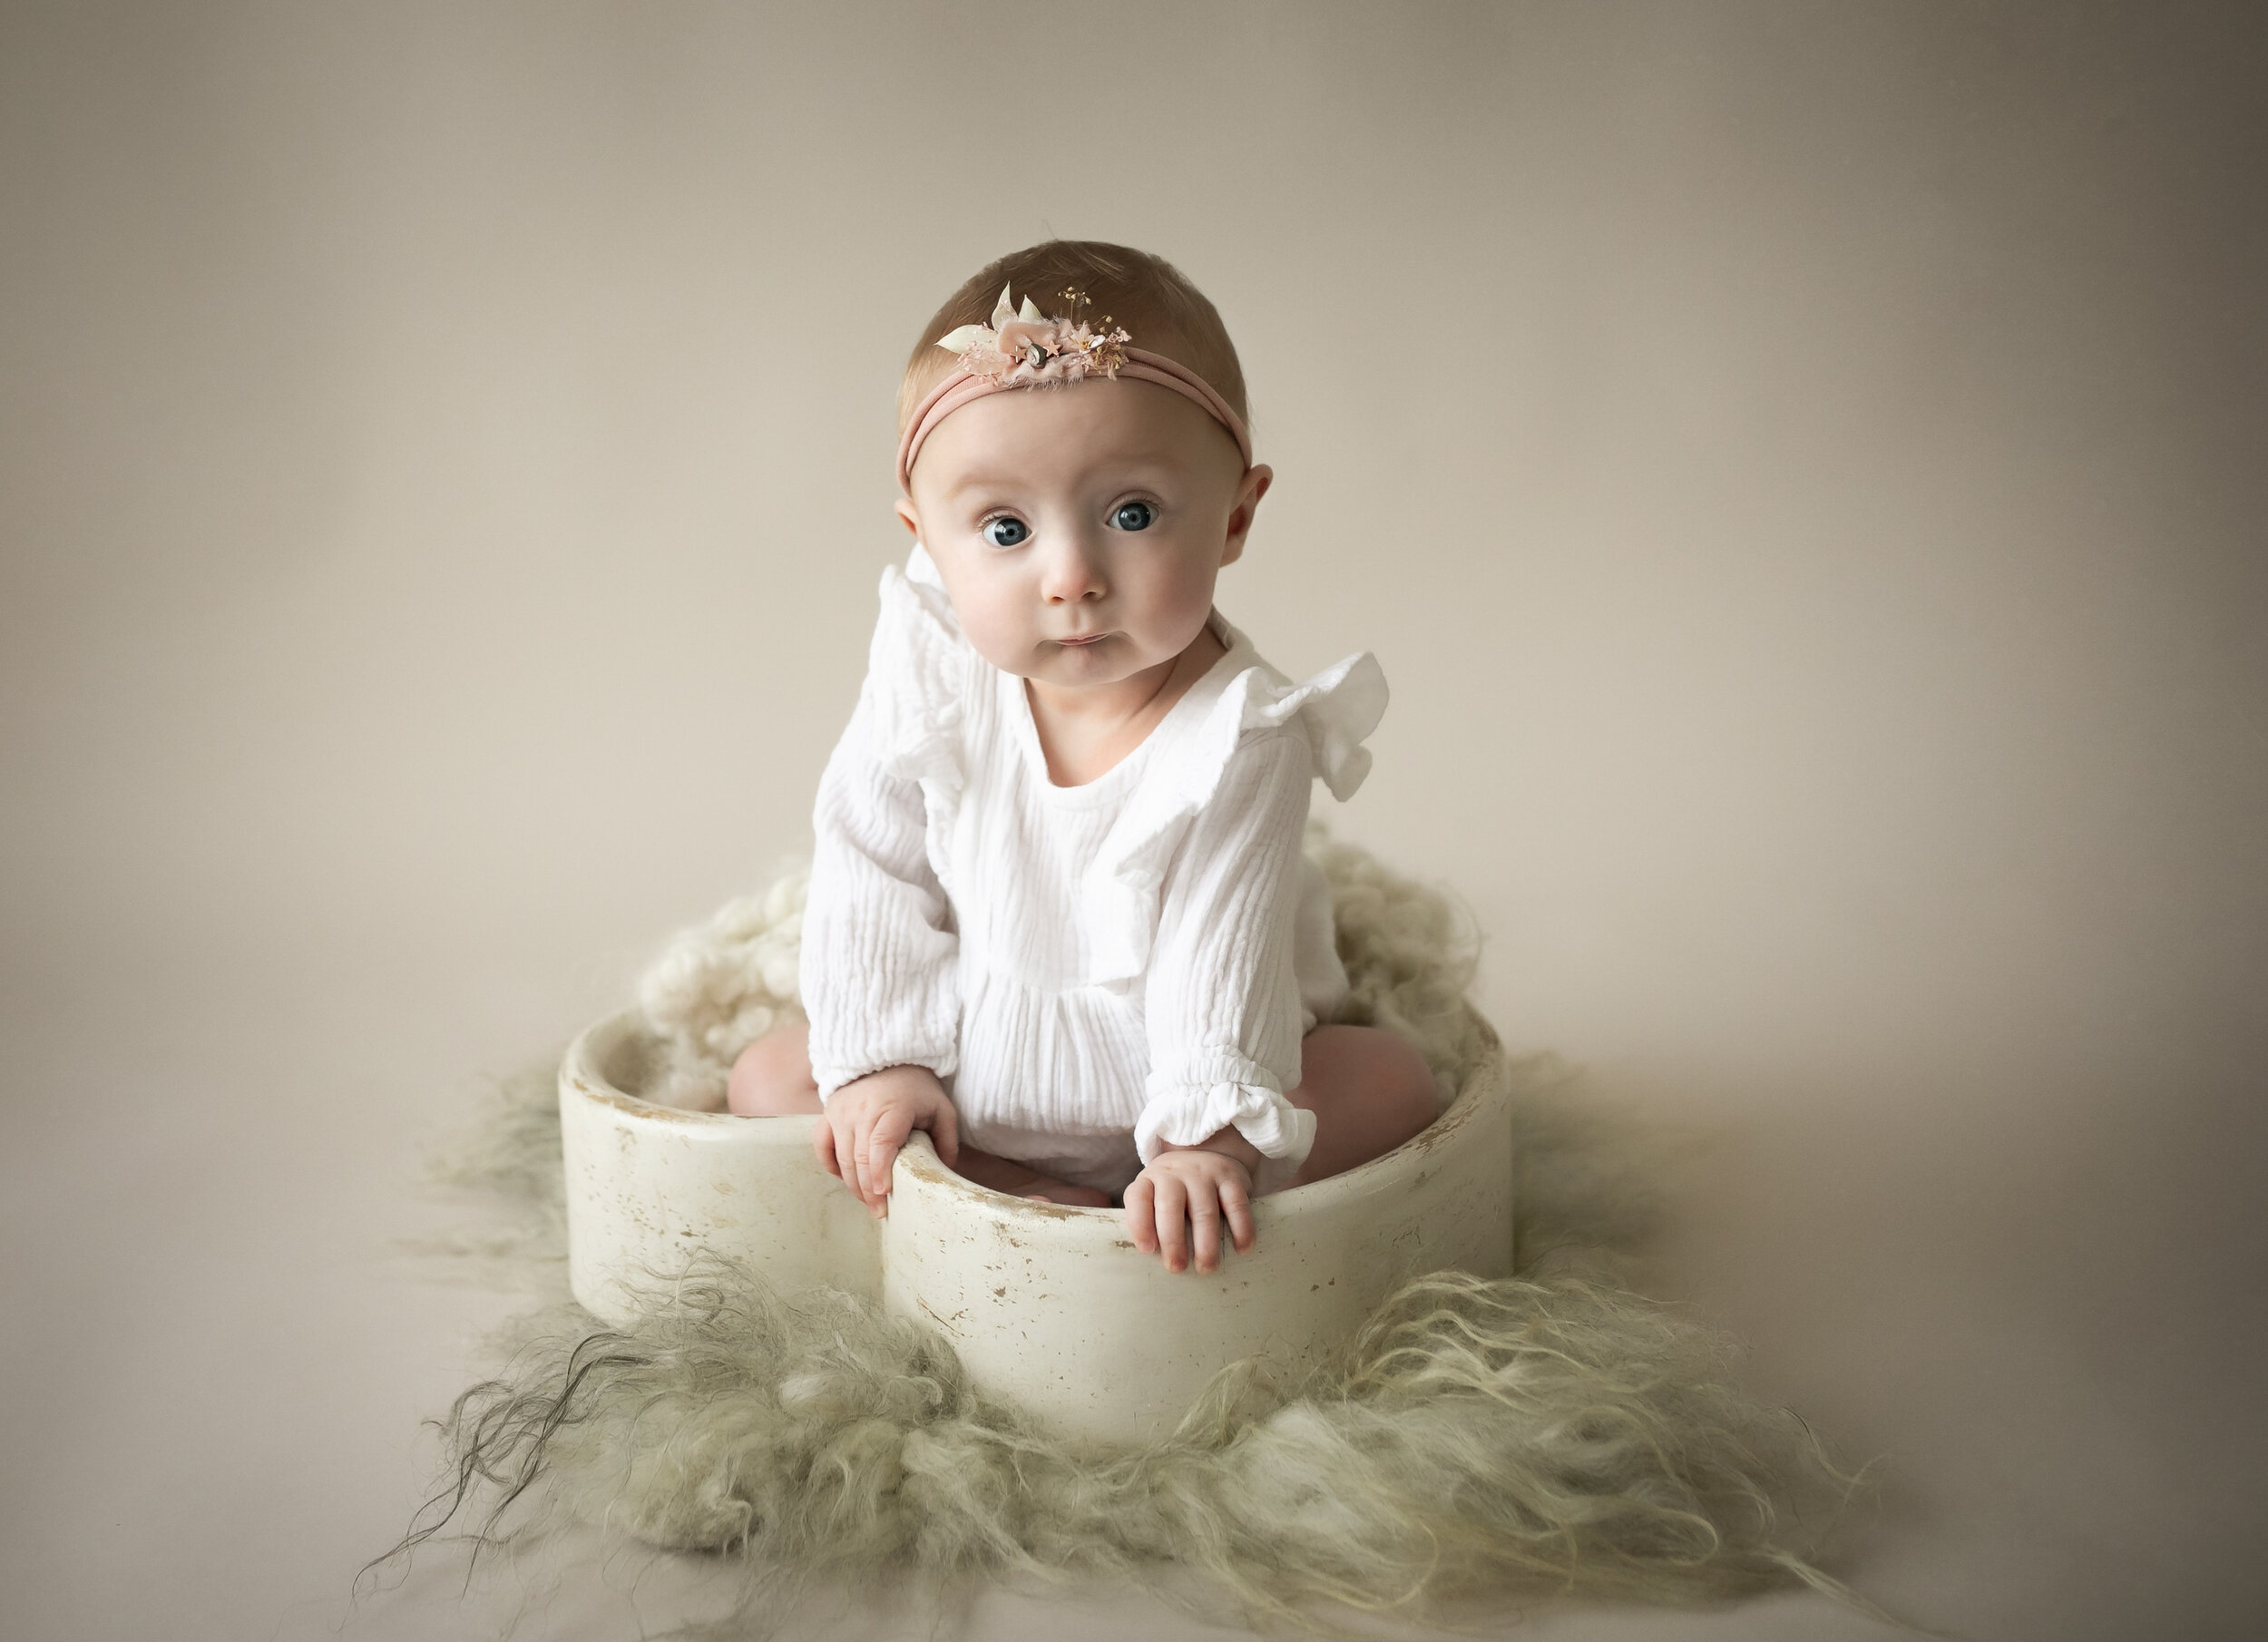 Baby_photoshoot_in_cheshire-23.jpg